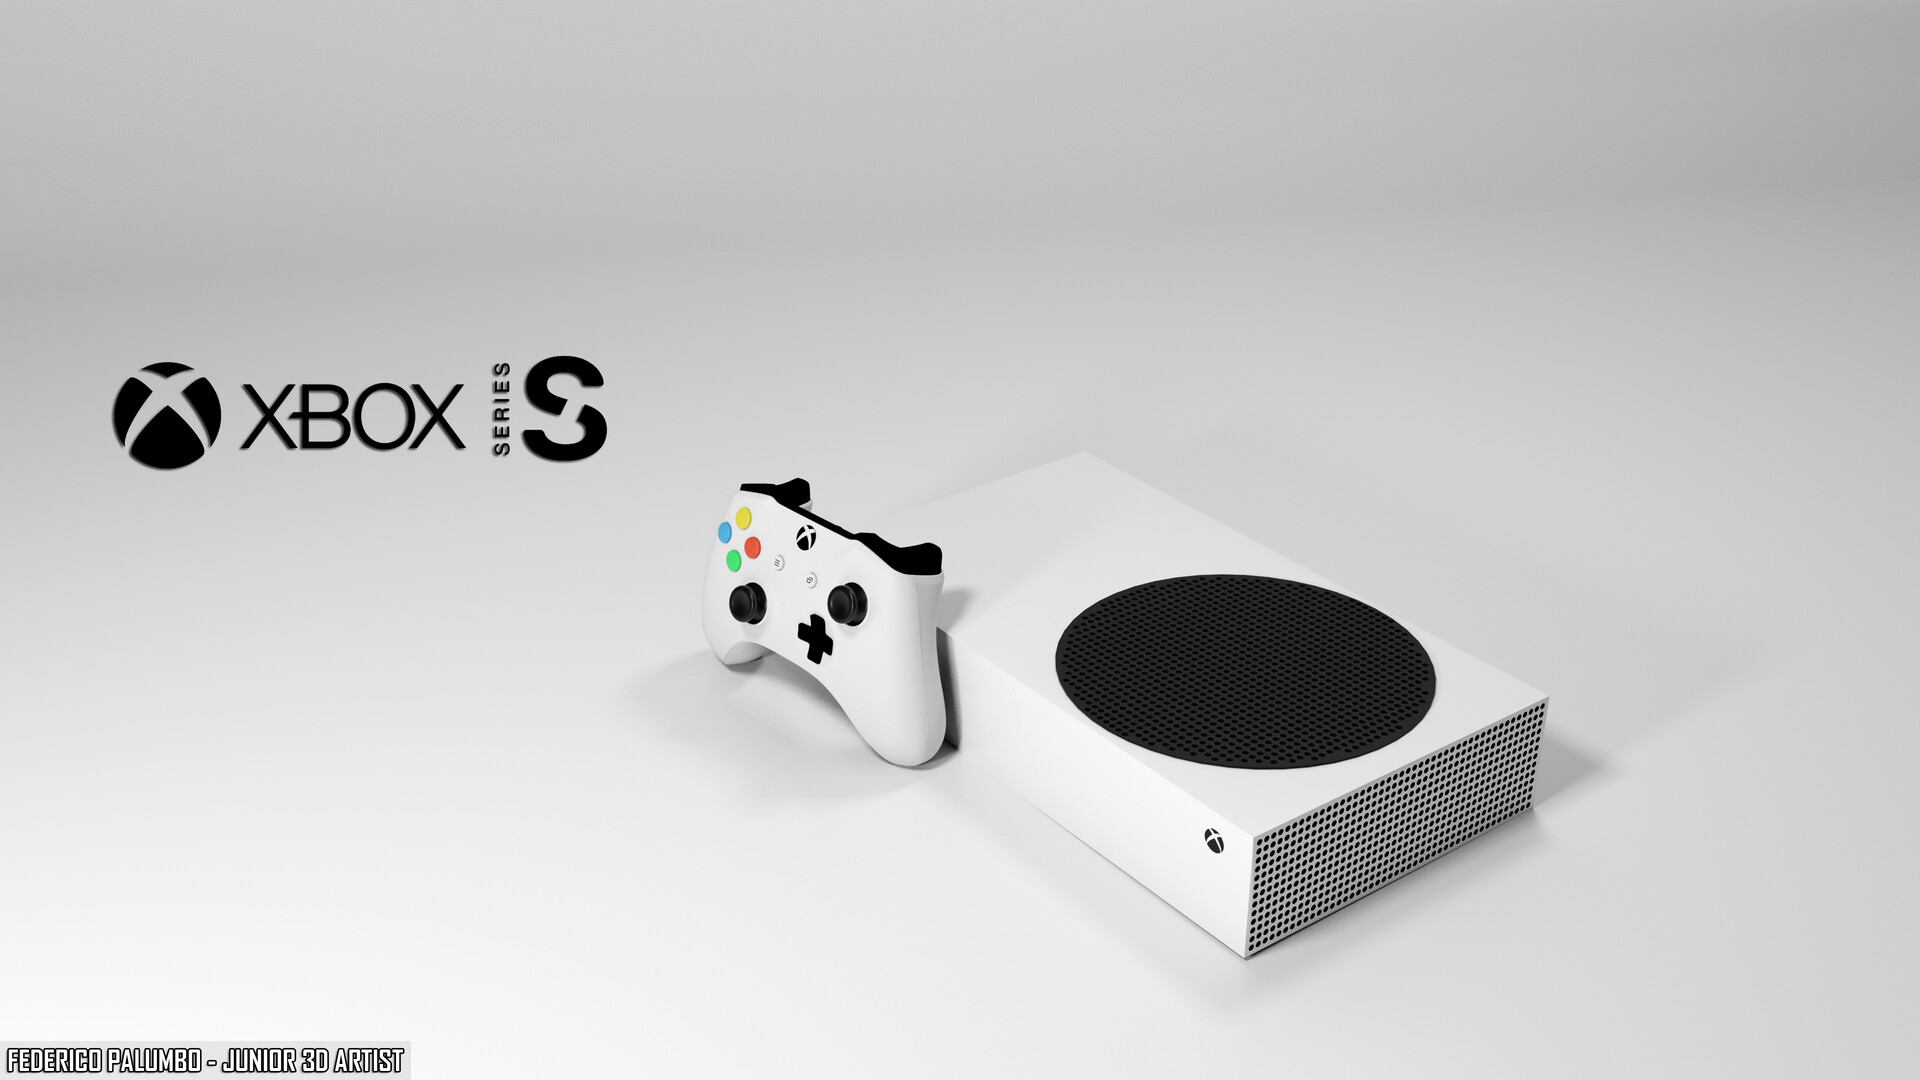 Federico Palumbo đã sử dụng Xbox Series S để tạo ra những tác phẩm nghệ thuật độc đáo và tuyệt đẹp. Hãy xem ảnh để khám phá những khía cạnh mới lạ và đầy sáng tạo của thiết bị này.